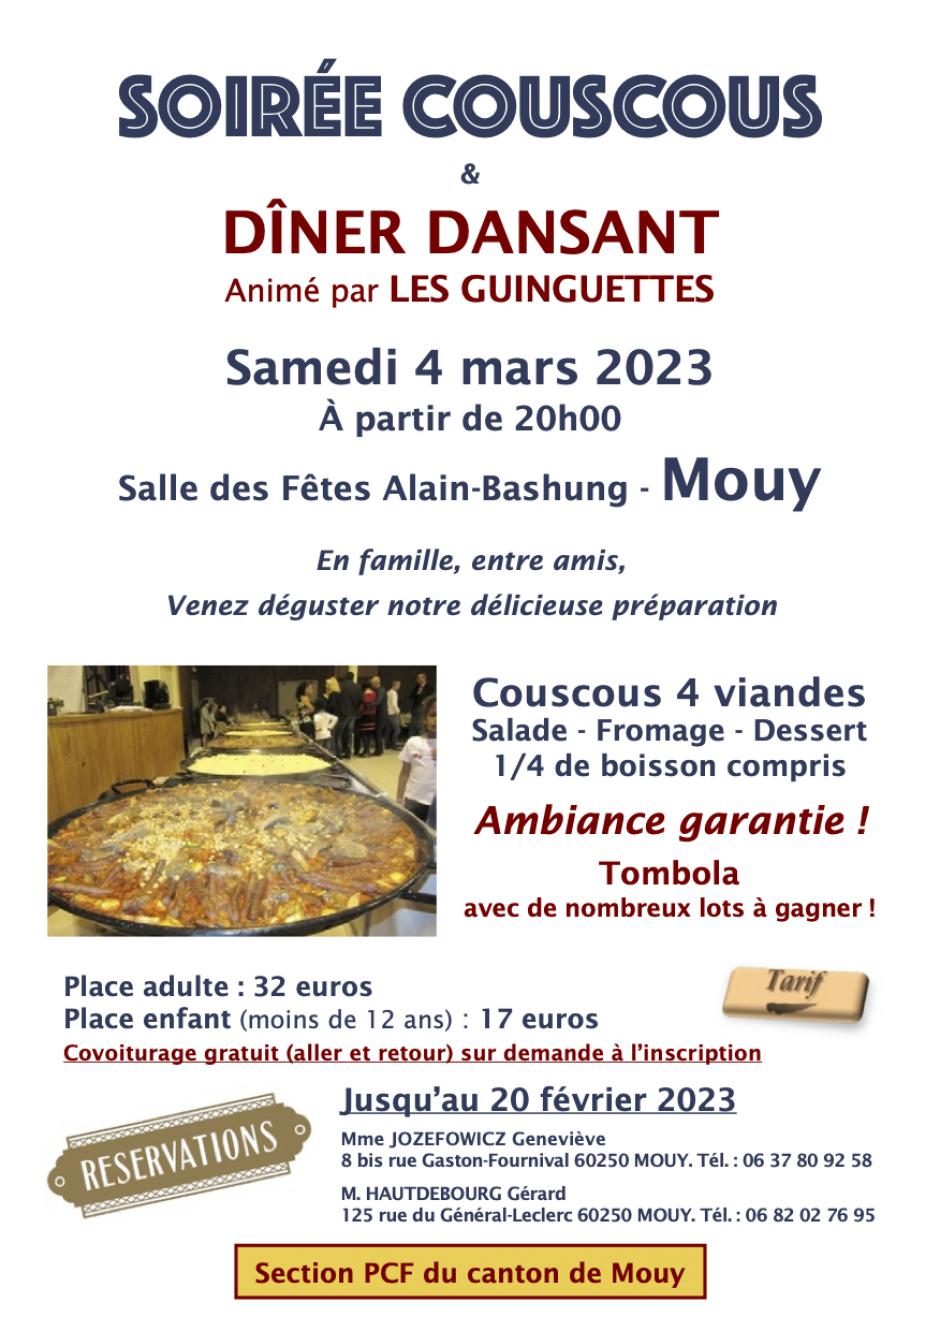 4 mars, Mouy - Soirée couscous et dîner dansant de la section PCF du canton de Mouy